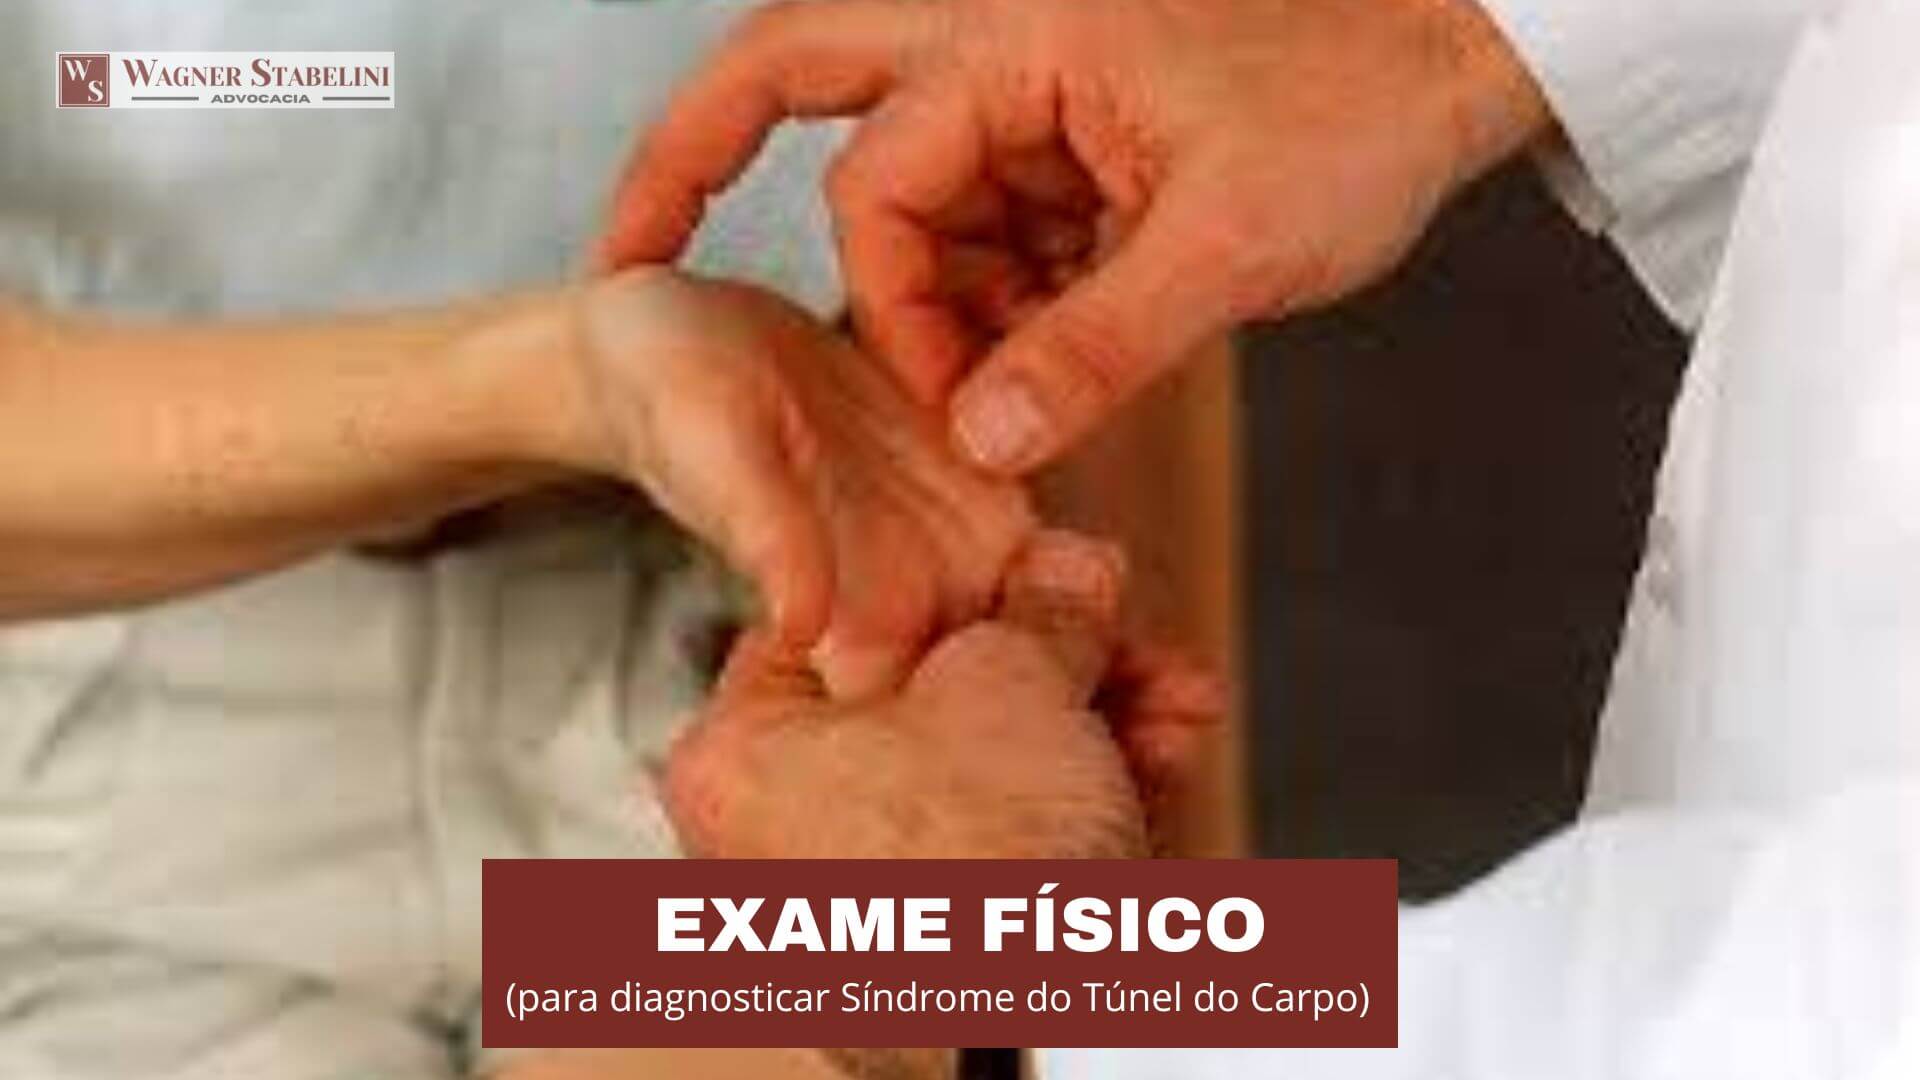 Exame Físico para diagnosticar Síndrome do Túnel do Carpo